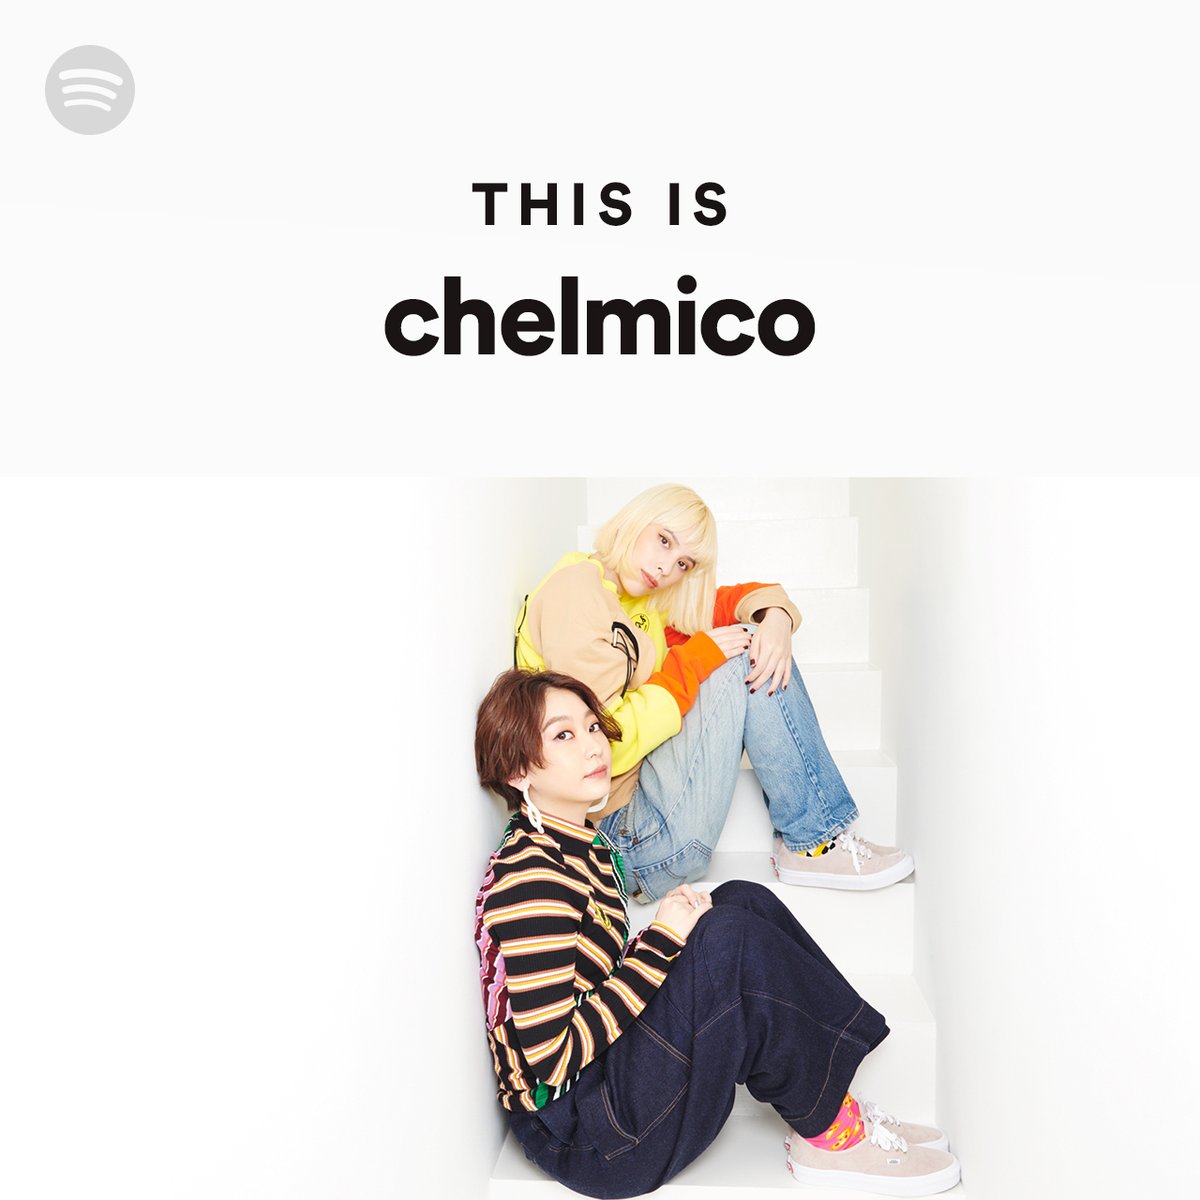 Spotify Japan Mステ 初出演 ラップユニット Chelmico Chelmico Offi が登場したmステは見ましたか 話題沸騰中のtvアニメ 映像研 には手を出すな のop曲 Easy Breezy を披露 気になった方は This Is Chelmico で楽曲を聴いて